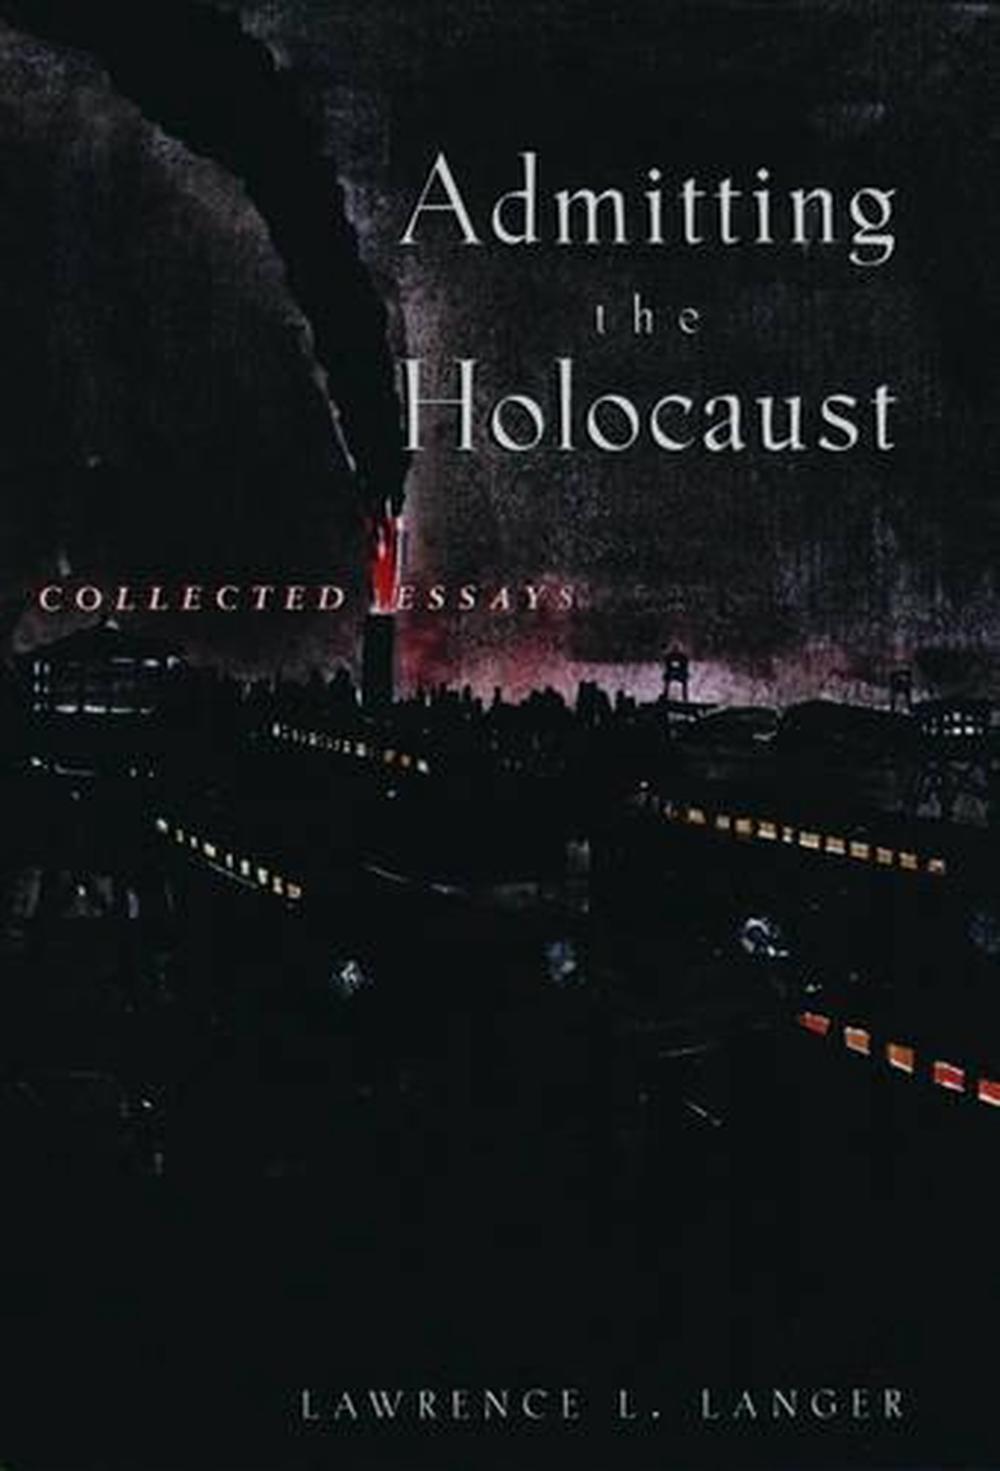 The Holocaust essay